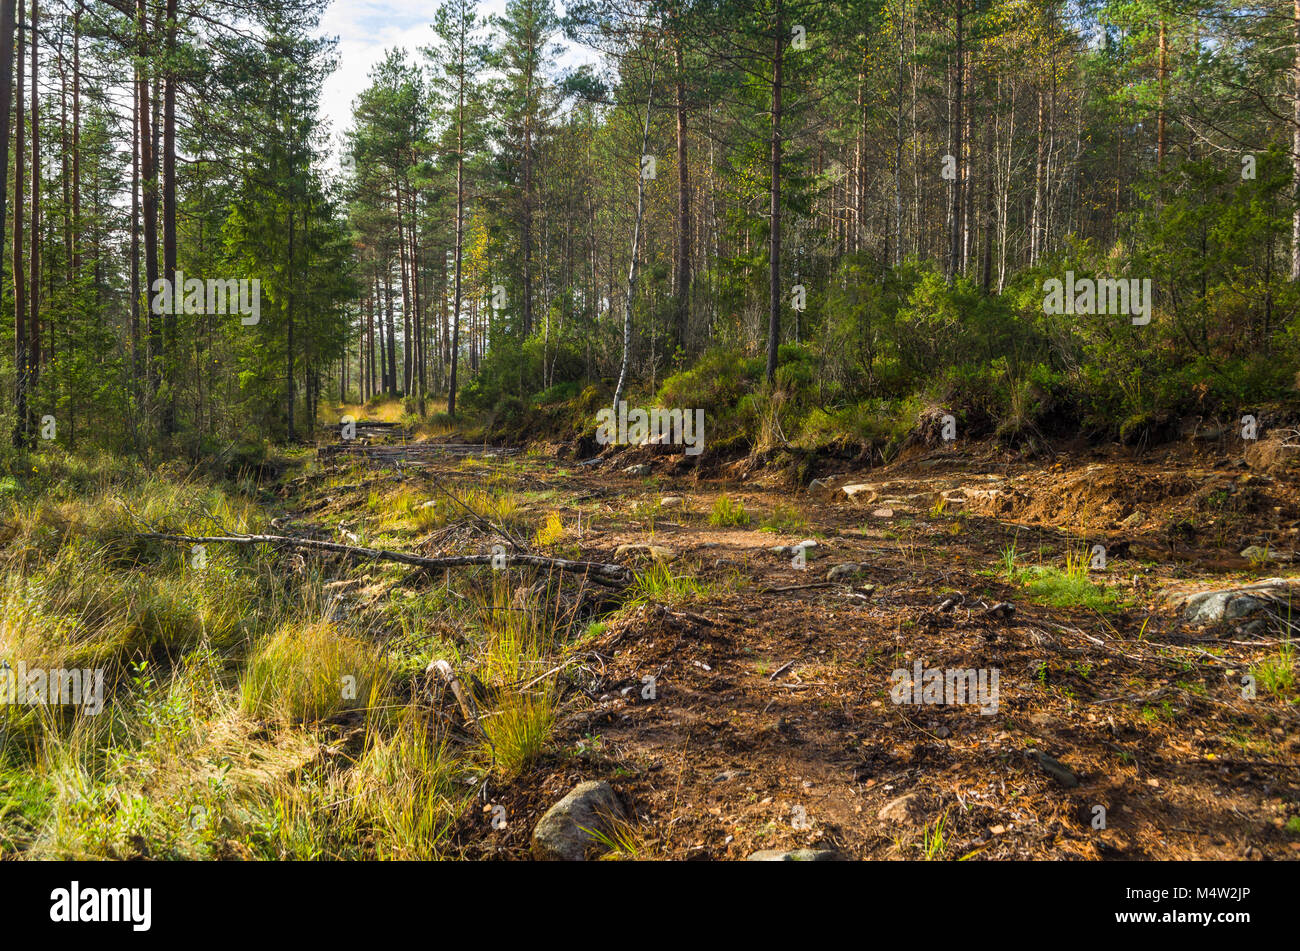 Alte corduroy Straße durch den Wald zu verlassenen Minen in Naturstien in Evje, Norwegen Sumpf. Der beste Platz für Elche Jäger. Stockfoto